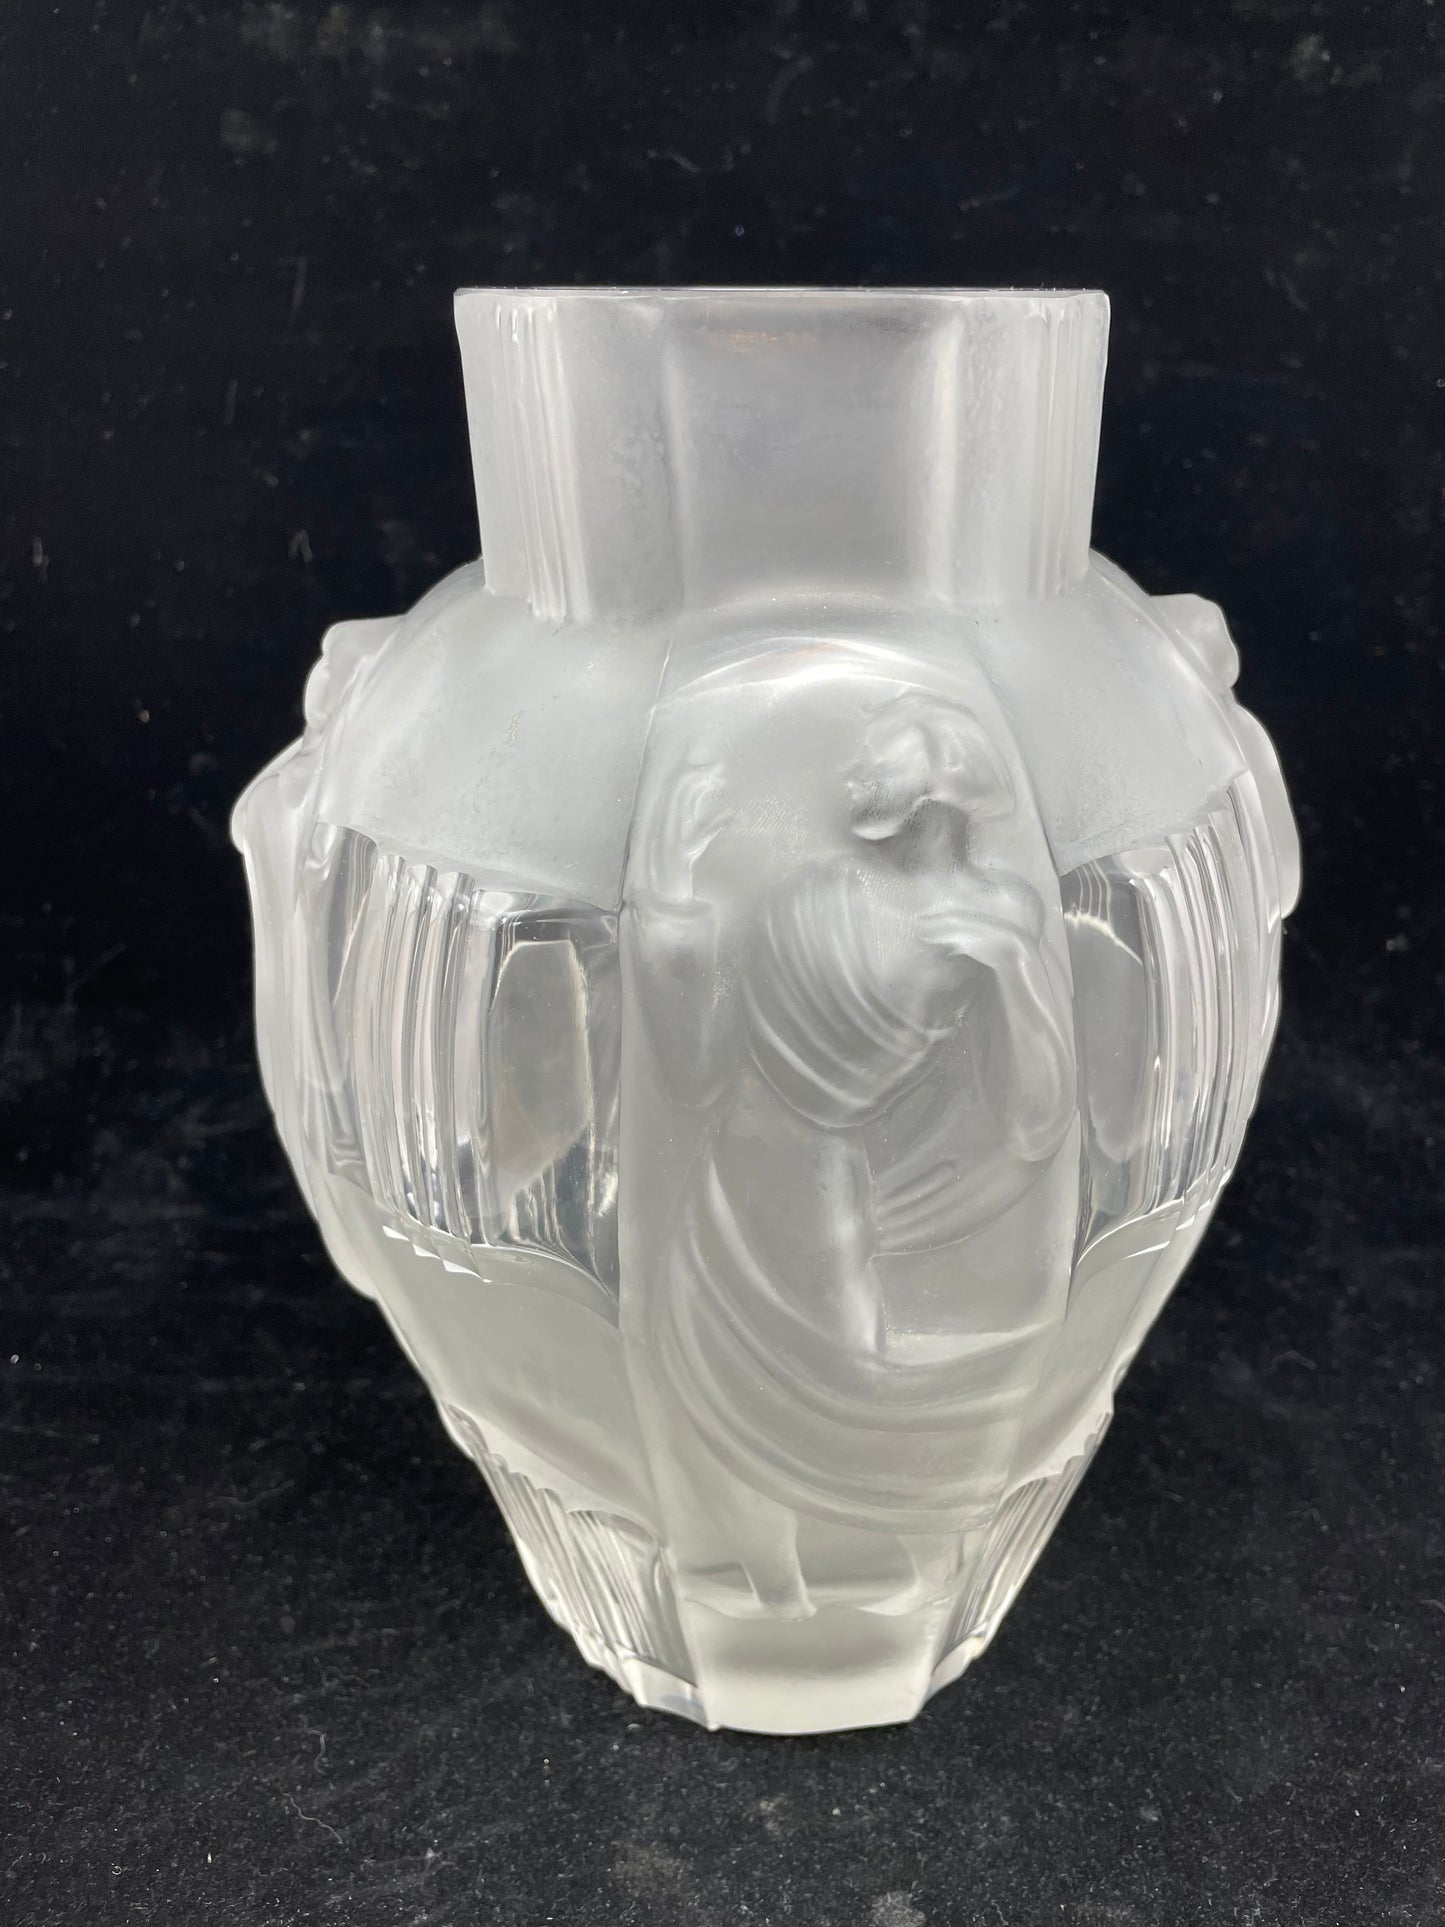 Curt Schlevogt "Ingrid" Glass Vase